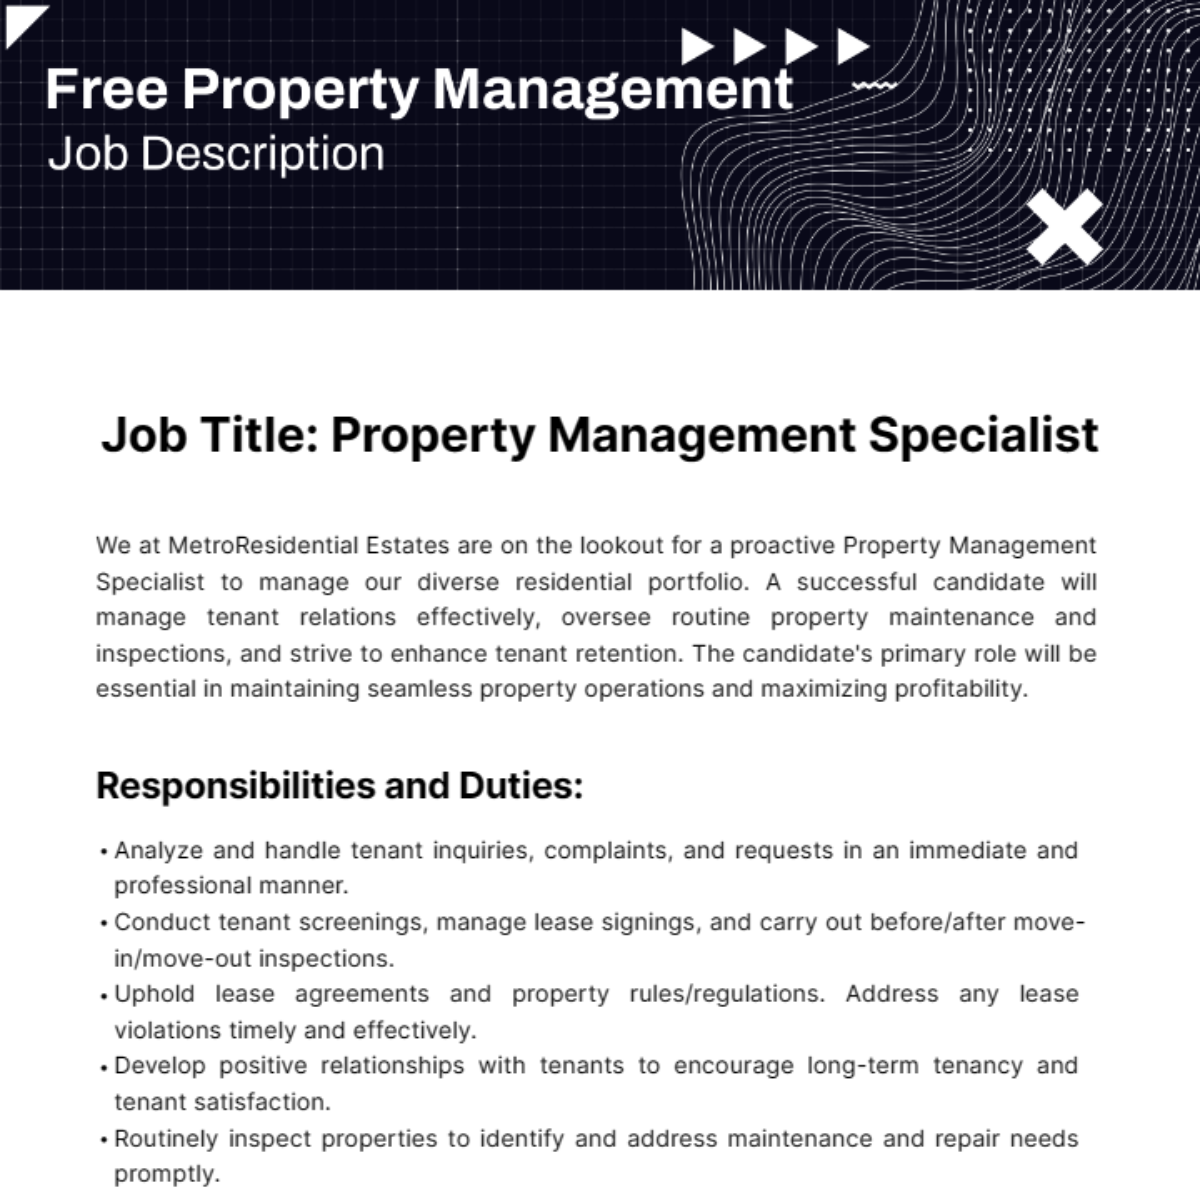 Free Property Management Job Description Template